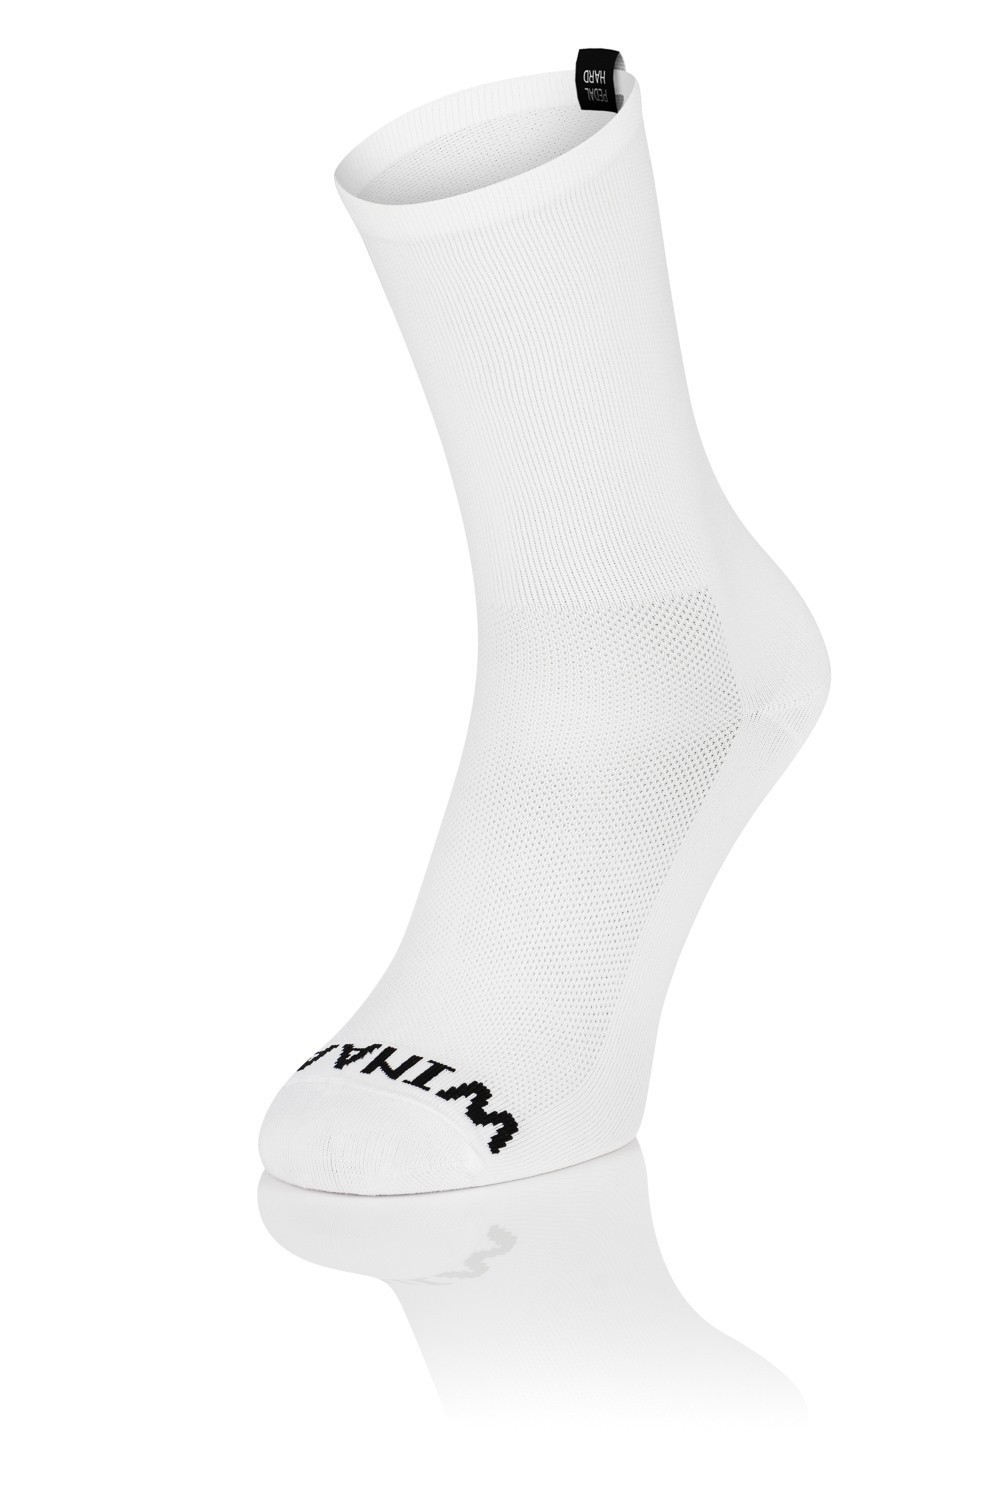 Winaar Full White Cycling Socks - Black Label - Winaar.nl Socks - Socks ...